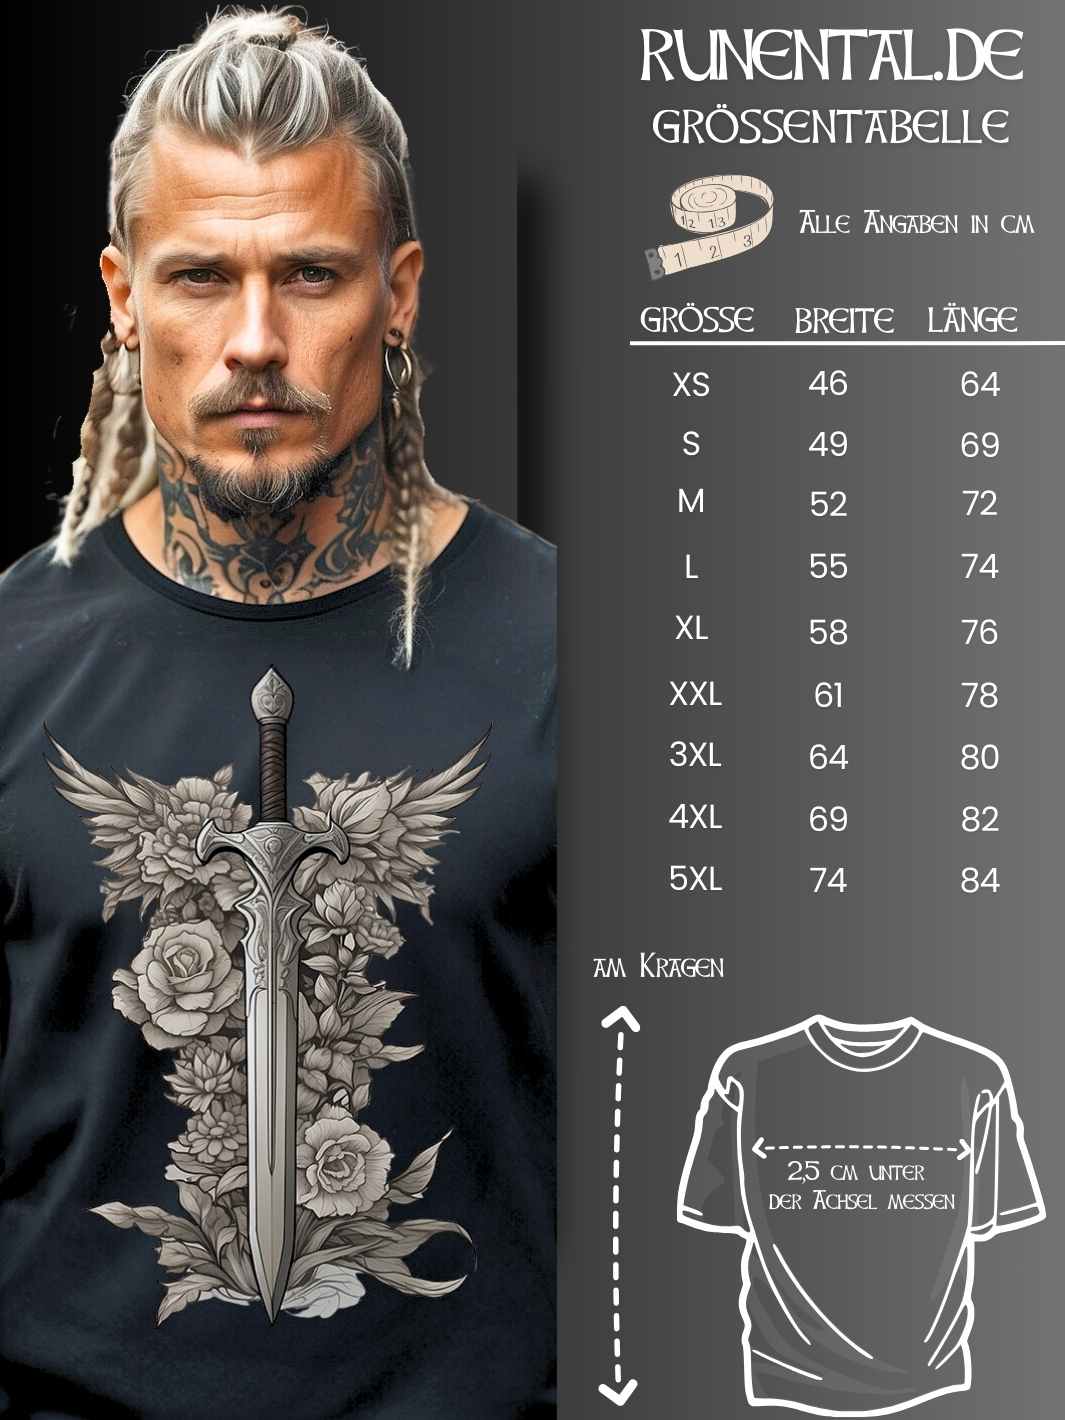 Größentabelle für das 'Schwert des Sylvanritters' T-Shirt, detailliert mit Maßen für Unisex-Größen, um die perfekte Passform zu finden